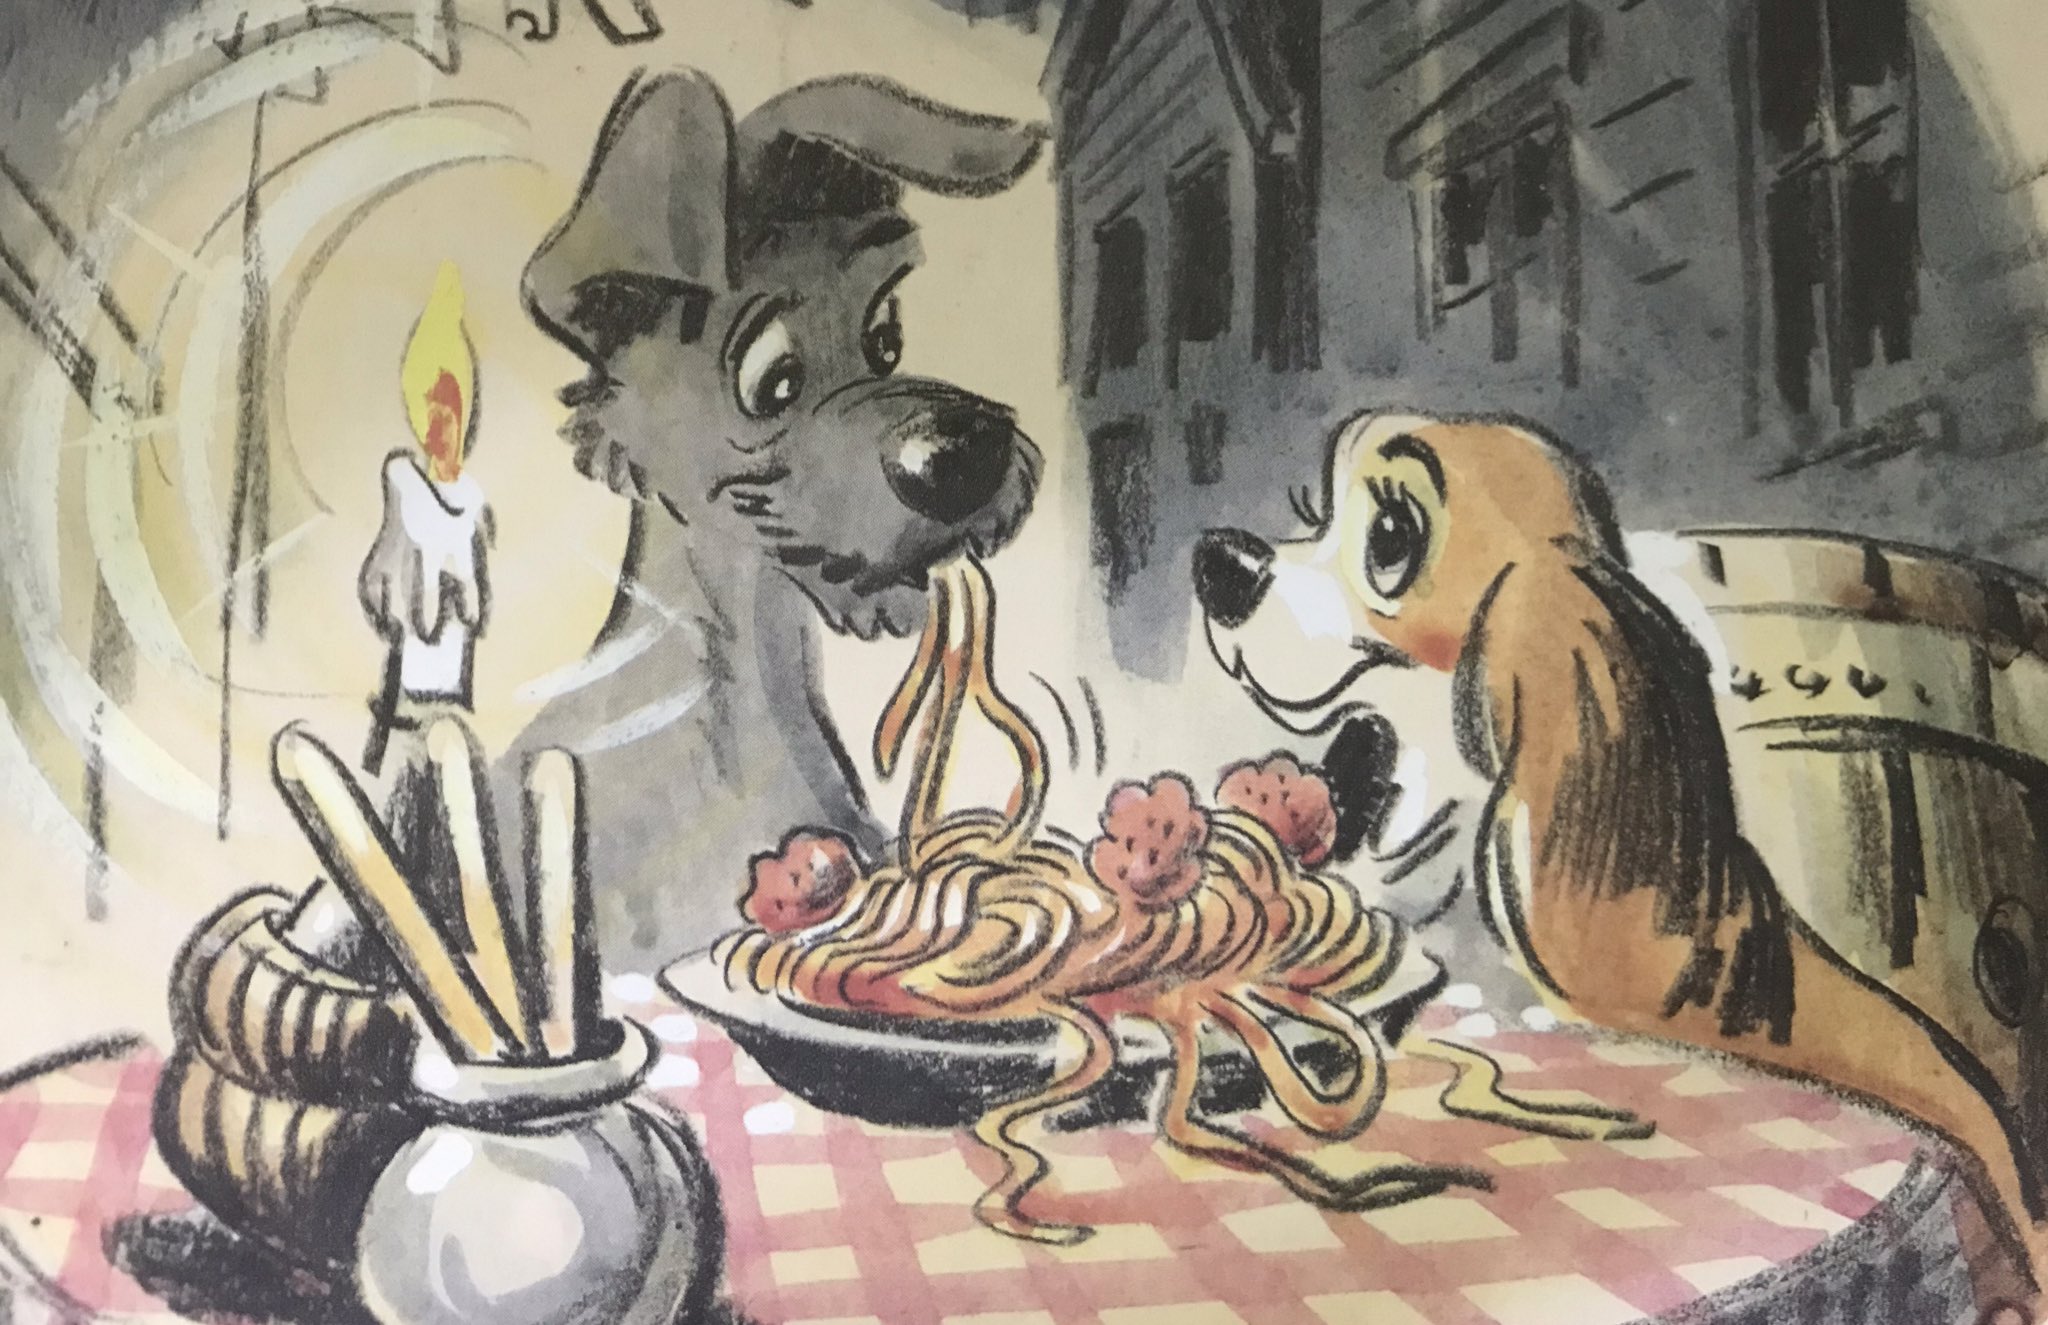 太田鳴雪 1955年6月16日 ディズニー映画 わんわん物語 が米国で公開された 原題は Lady And The Tramp で レディとトランプという2匹の犬が主役 スパゲッティを食べながら偶然キスする場面は有名 映画を観ないタイプの人だと 知らない人も結構いる